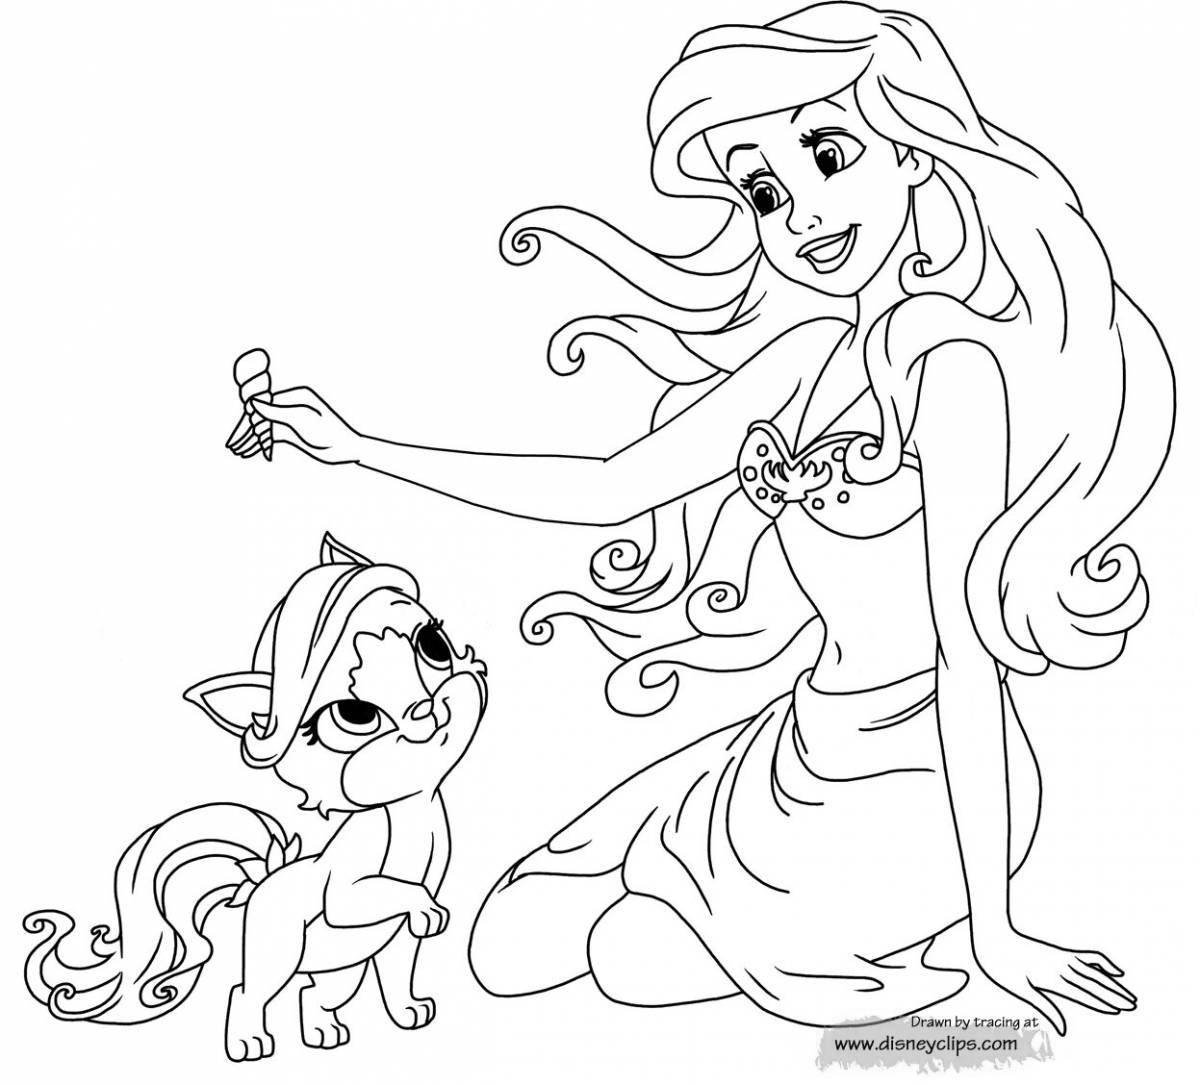 Fun coloring princess with a cat